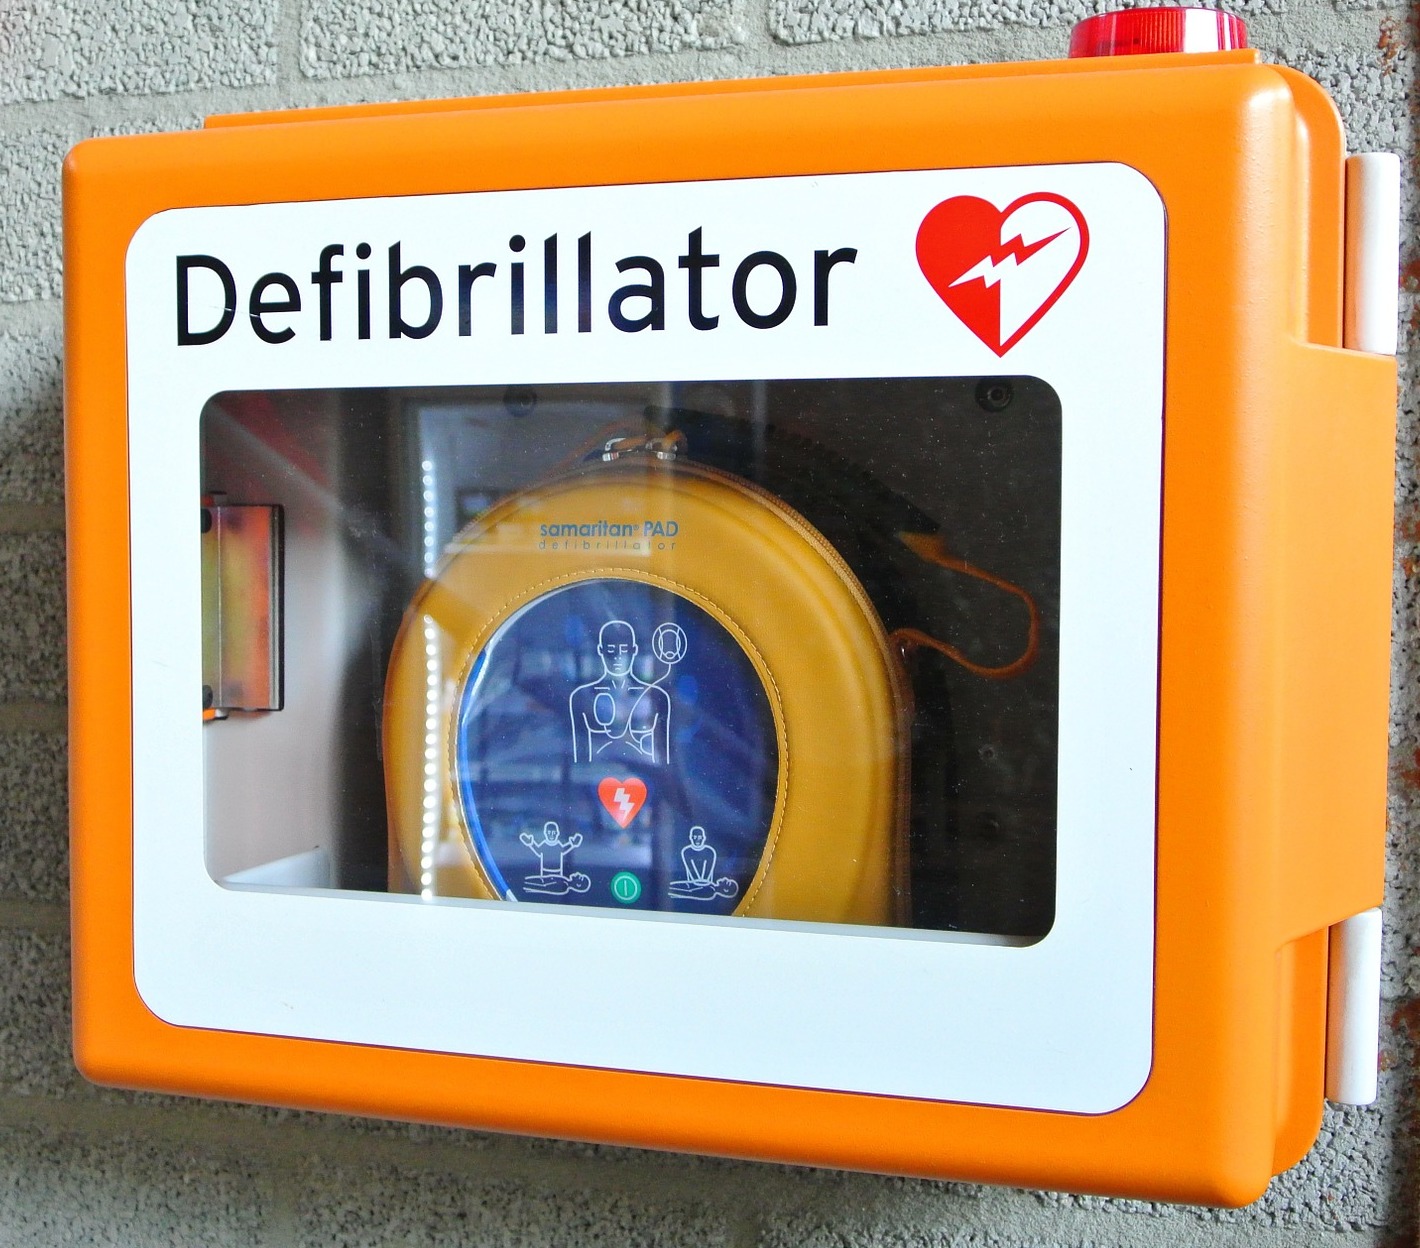 come si usa un defibrillatore